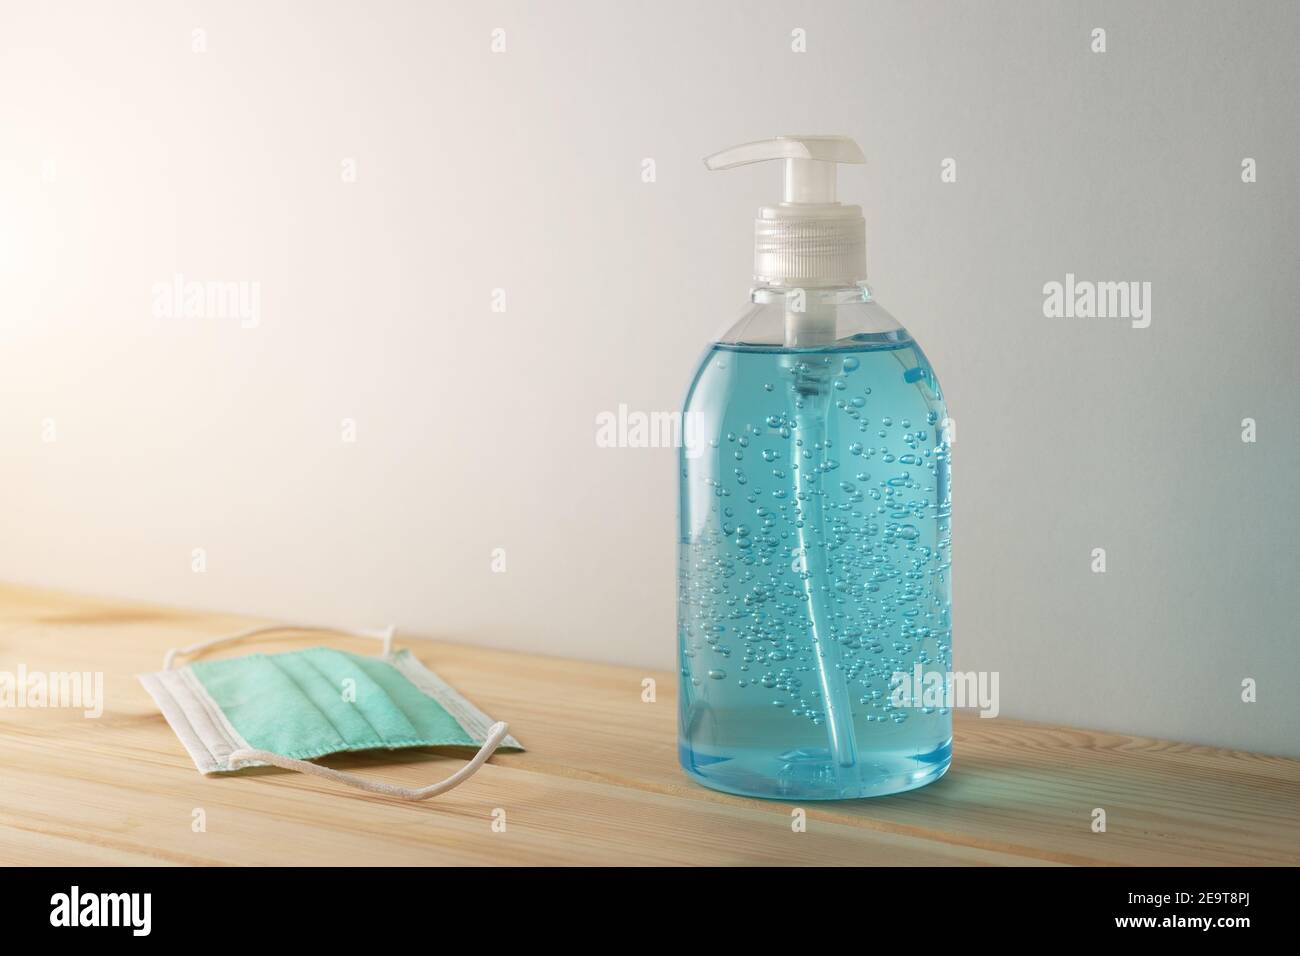 Désinfectant pour les mains dans une bouteille avec masque médical sur une table en bois. Concept de prévention des coronavirus. Banque D'Images